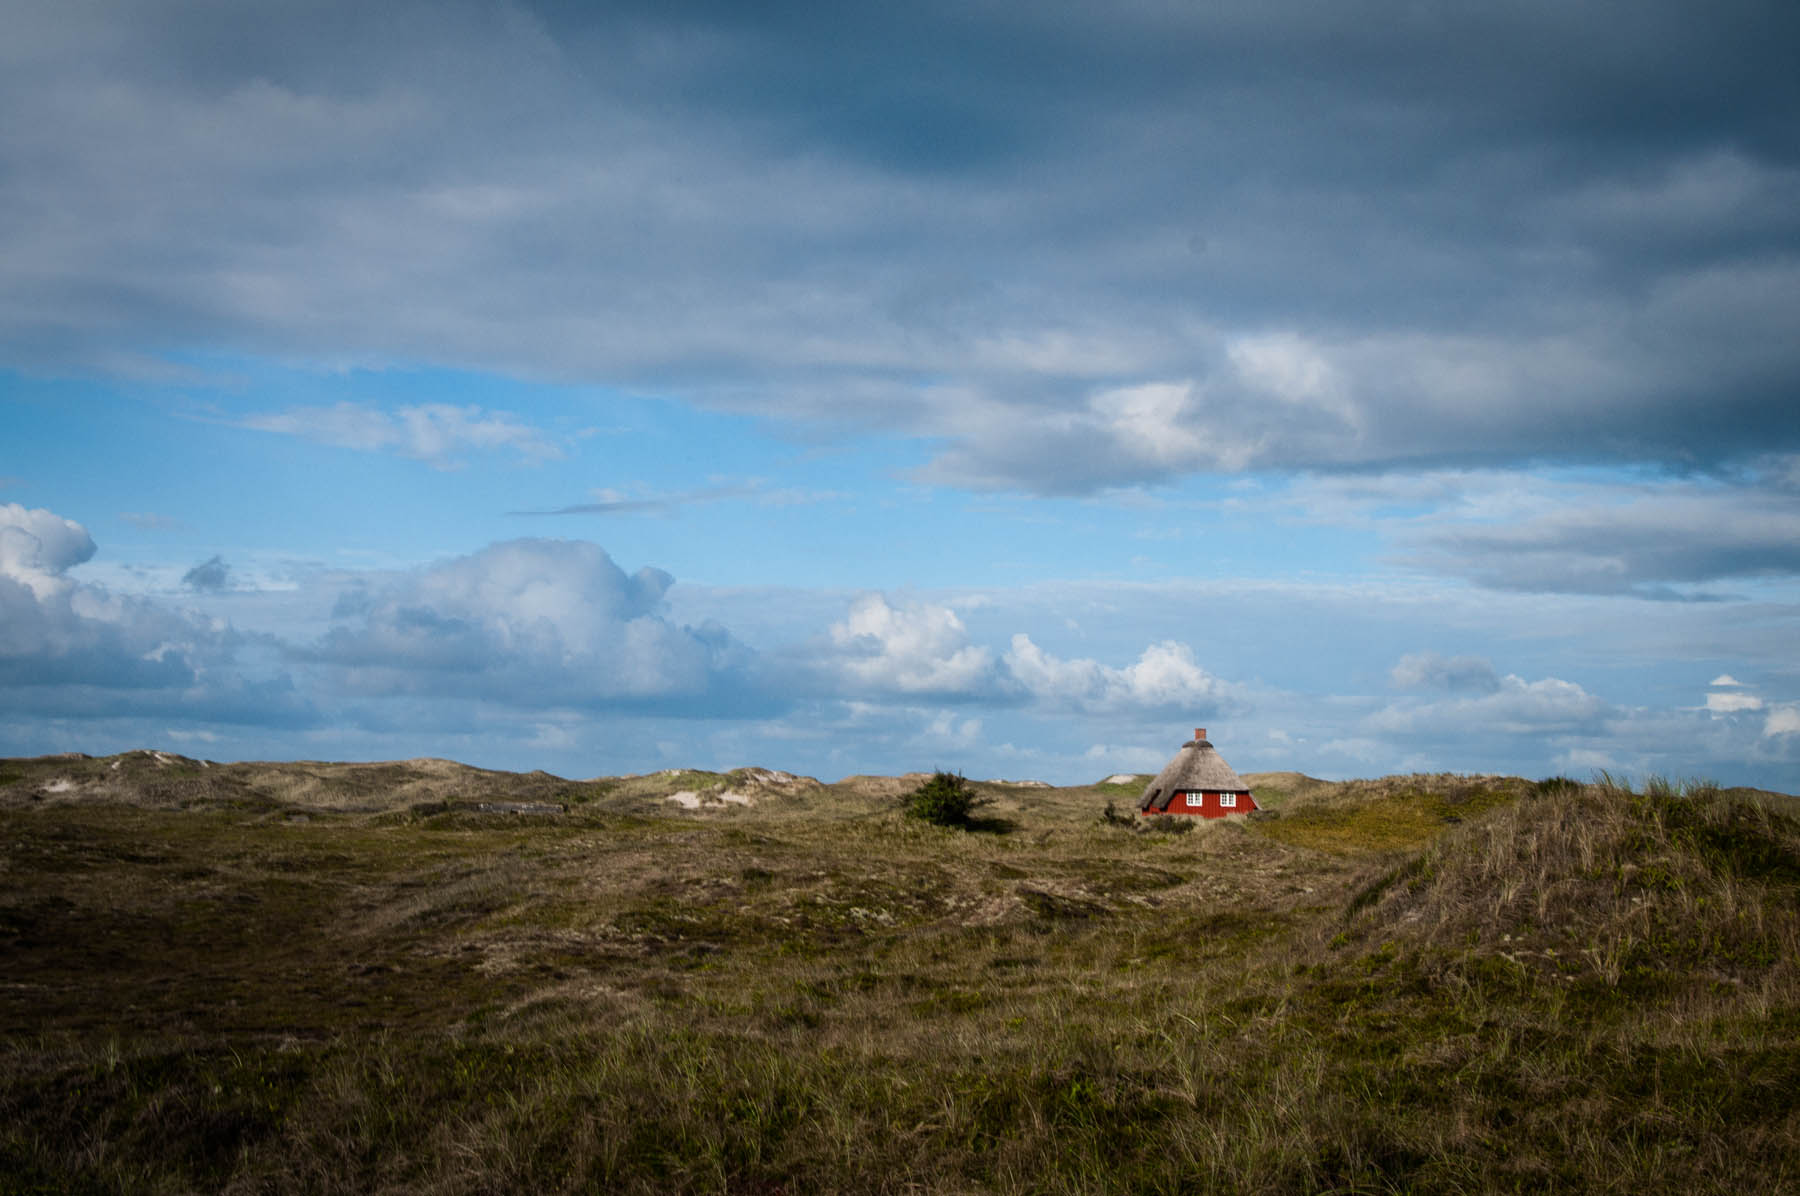 Der Sønder Klitvej im Westen Dänemarks mit seinen kleinen Reed-Häusern